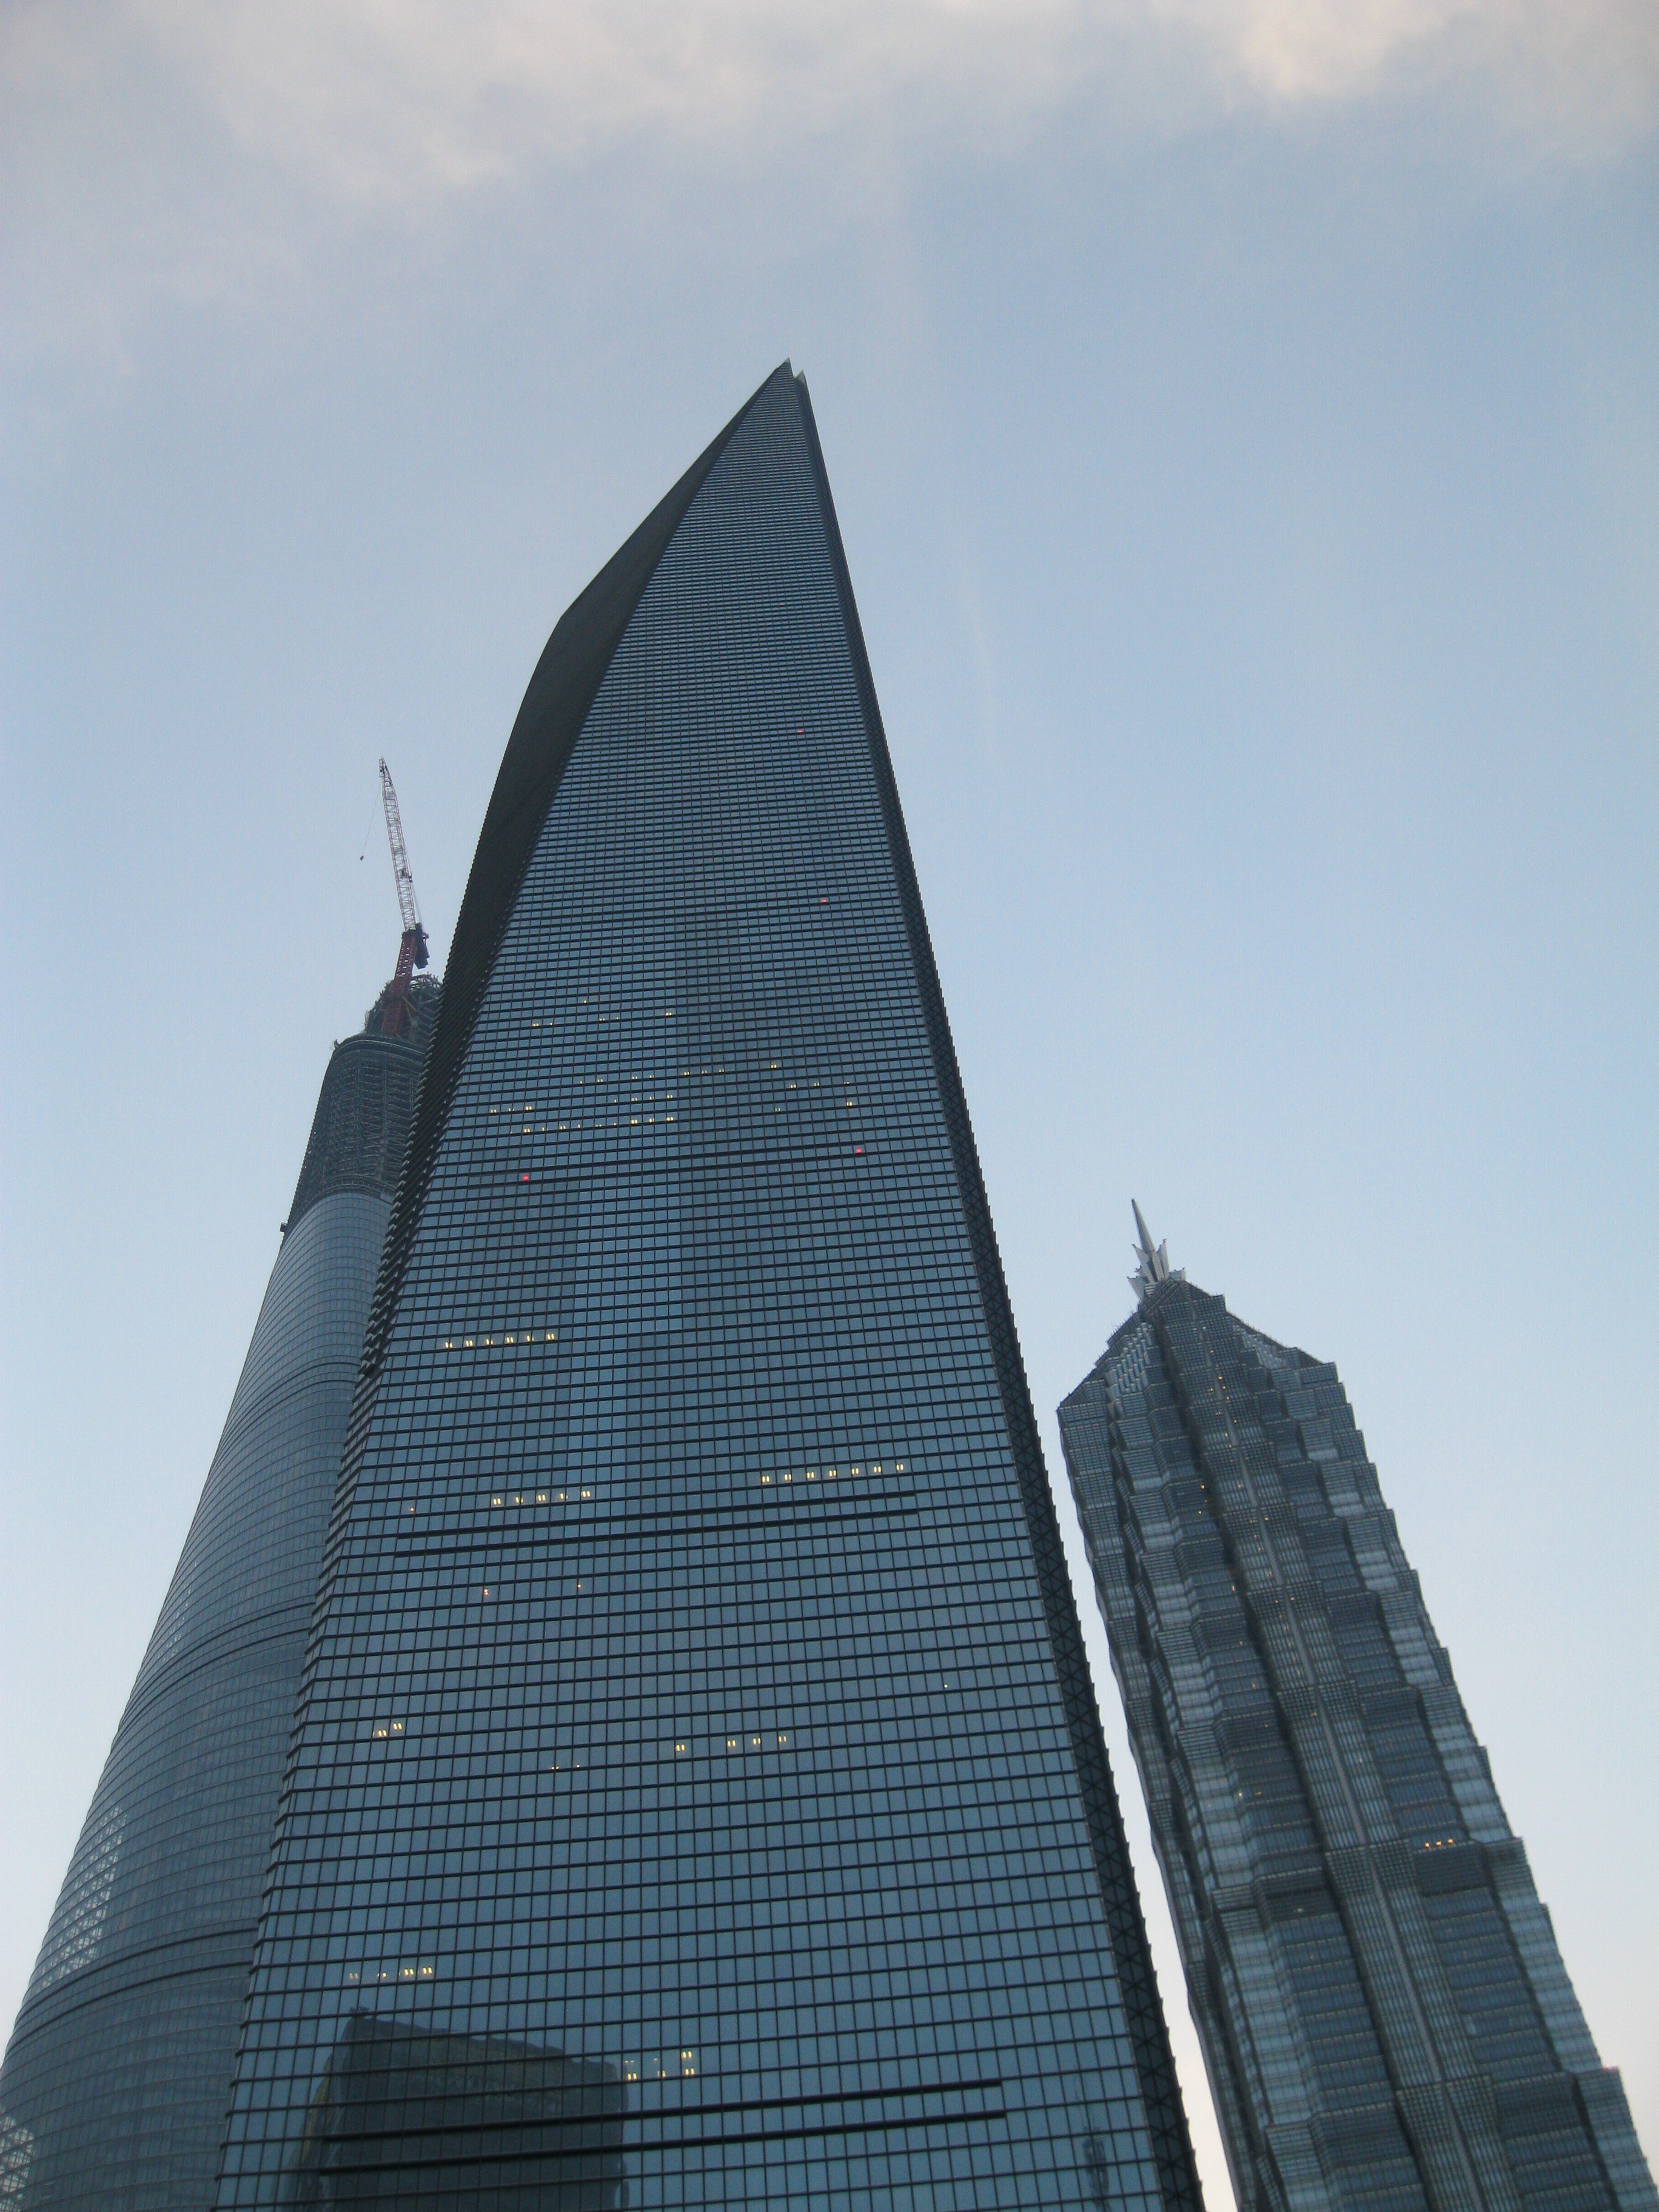 上海环球金融中心(上海环球金融中心图片)